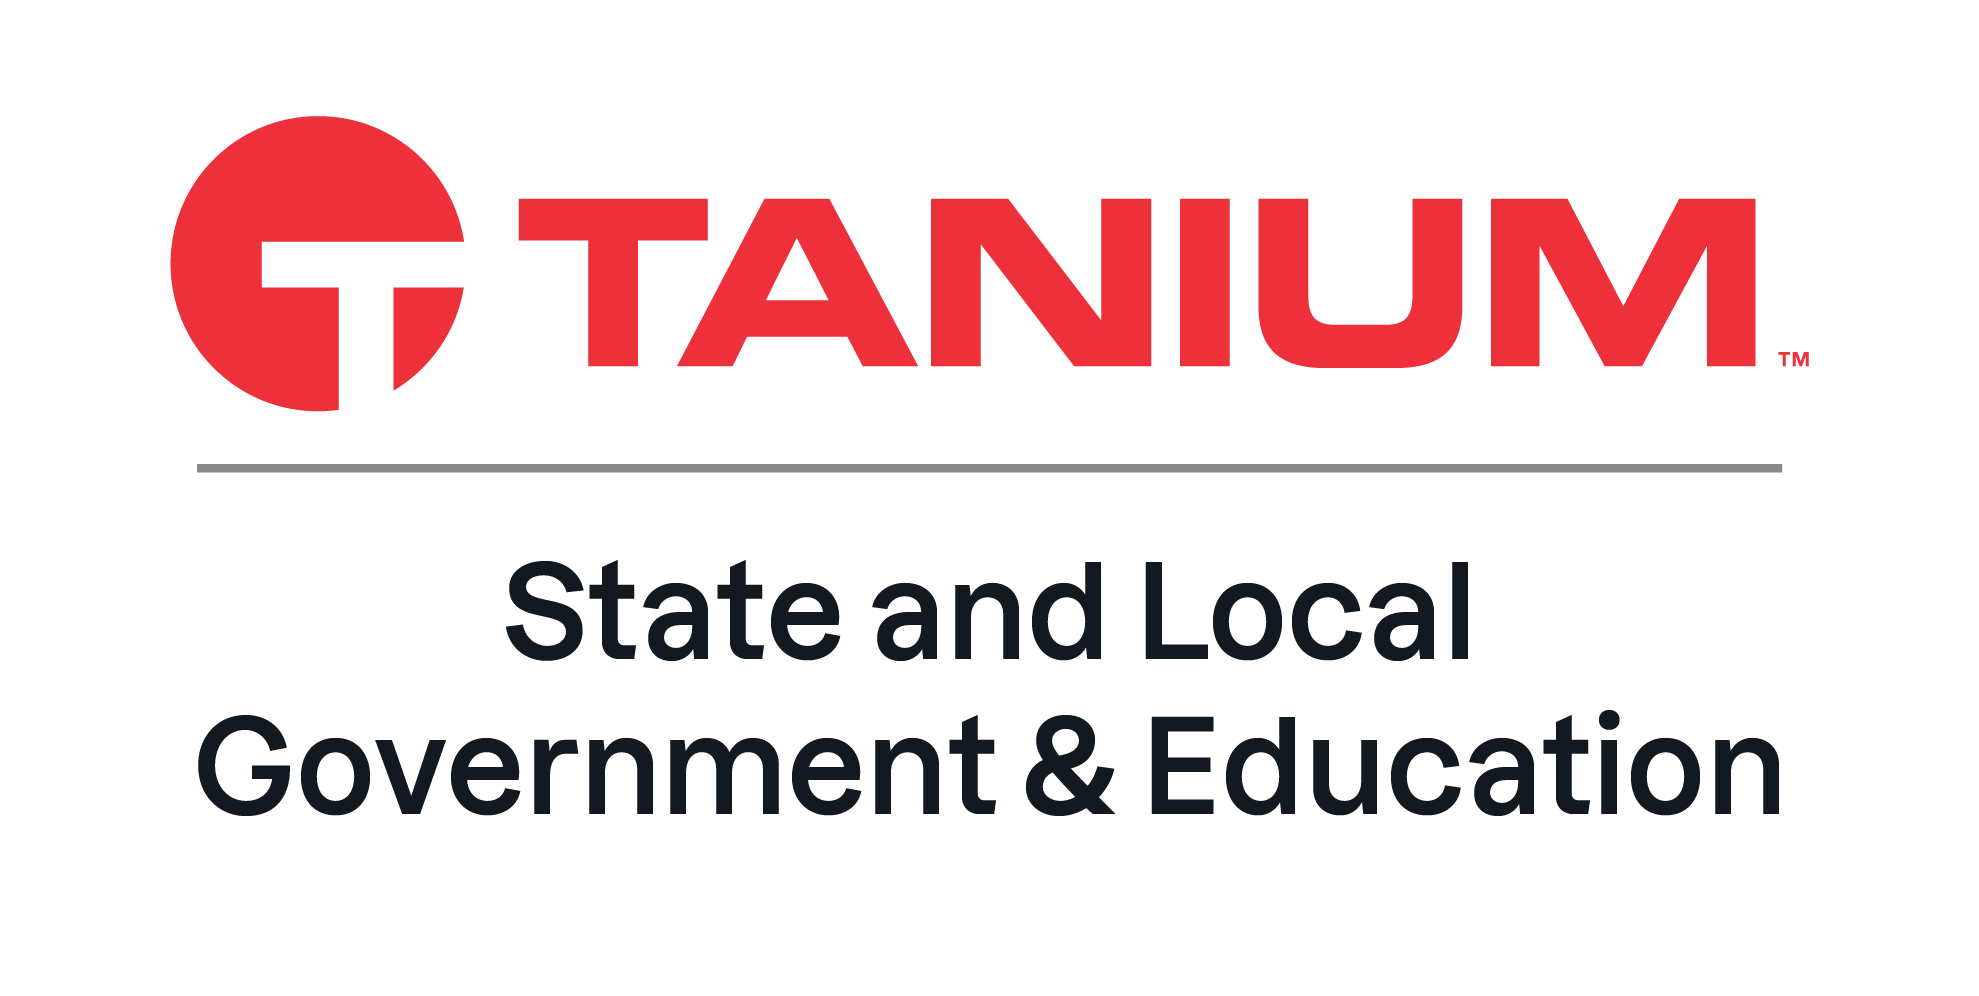 Tanium logo